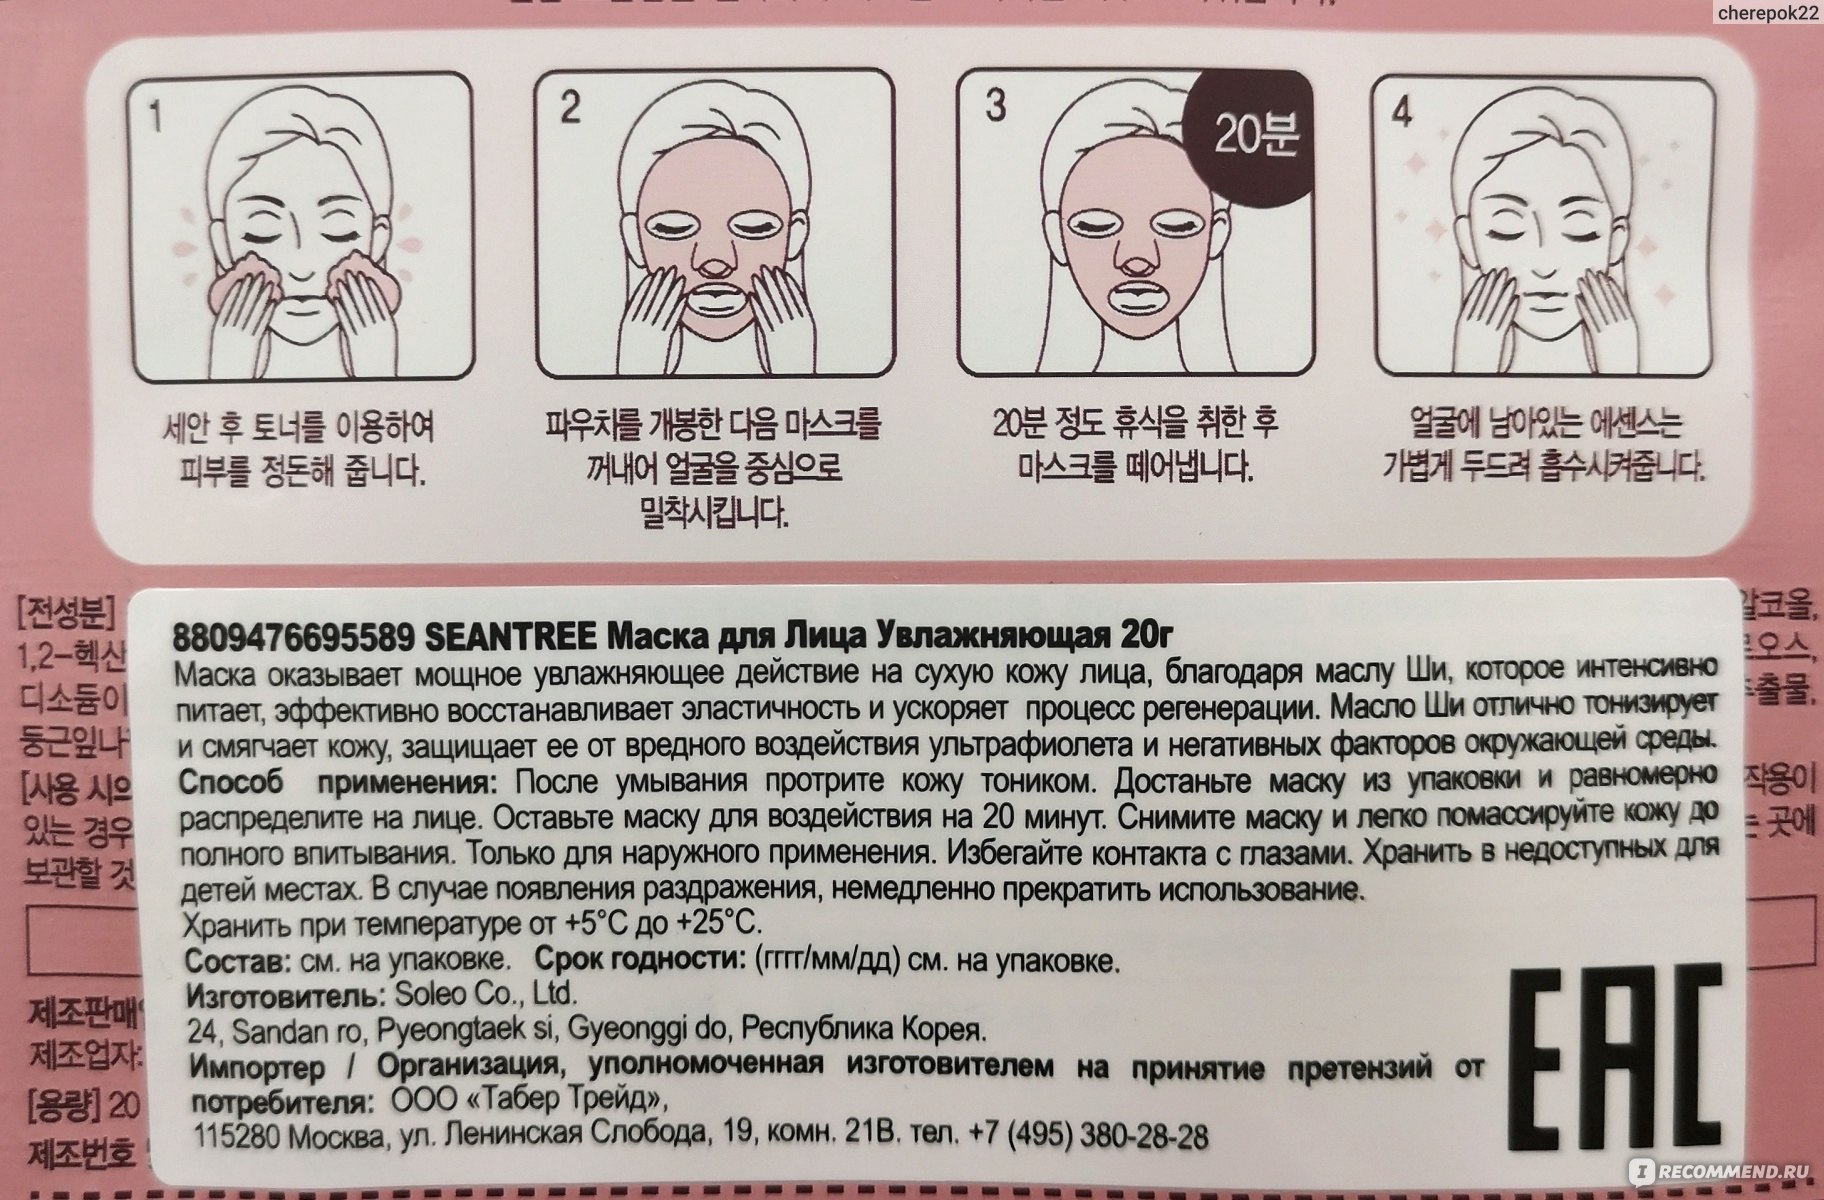 Как применять тканевую маску. Маски для лица тканевые инструкция. Корейская маска для воздействия. Тканевая маска для лица как пользоваться. Тканевая маска для лица как пользоваться правильно корейская.